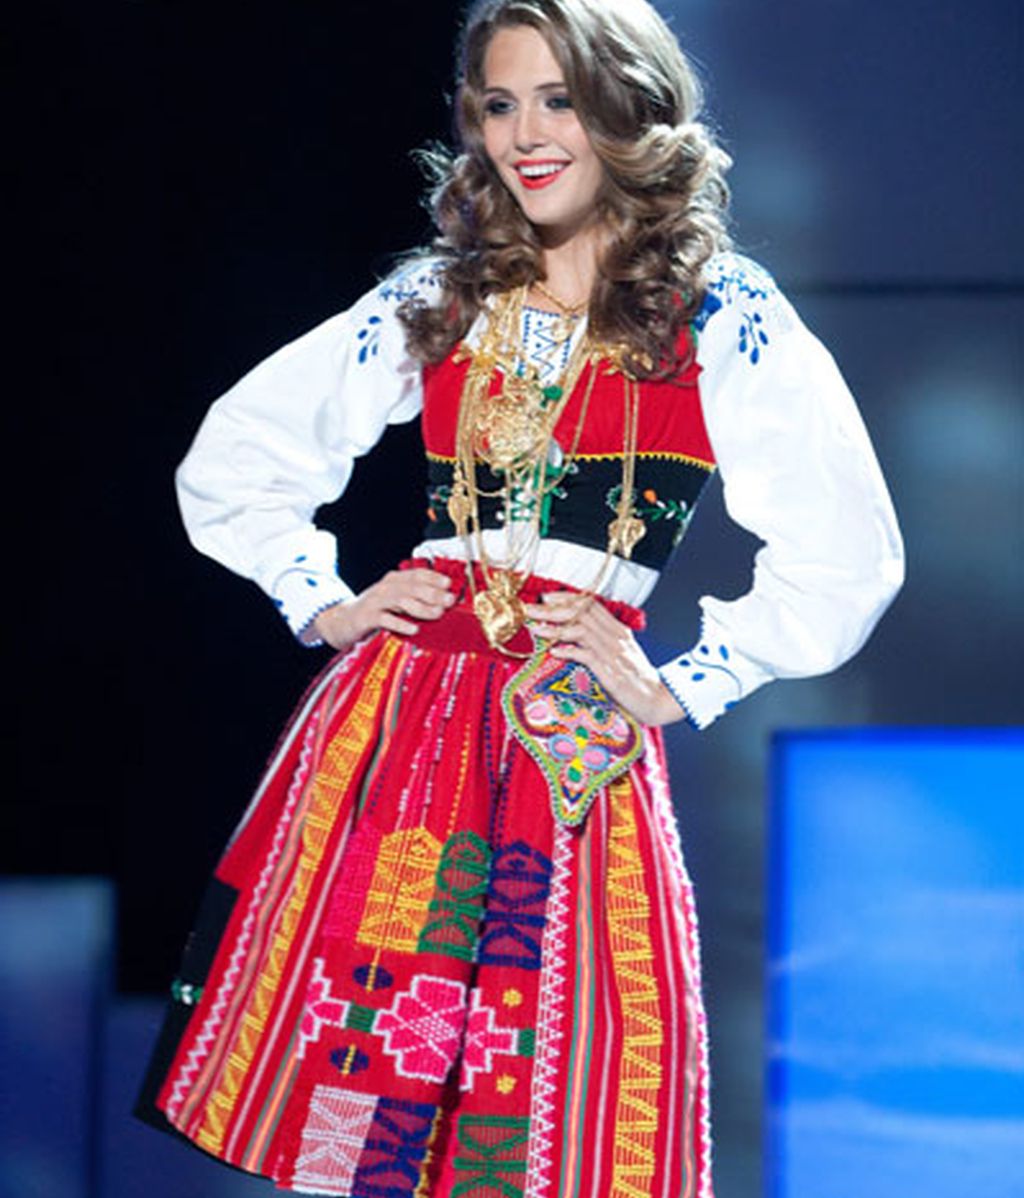 Miss Portugal